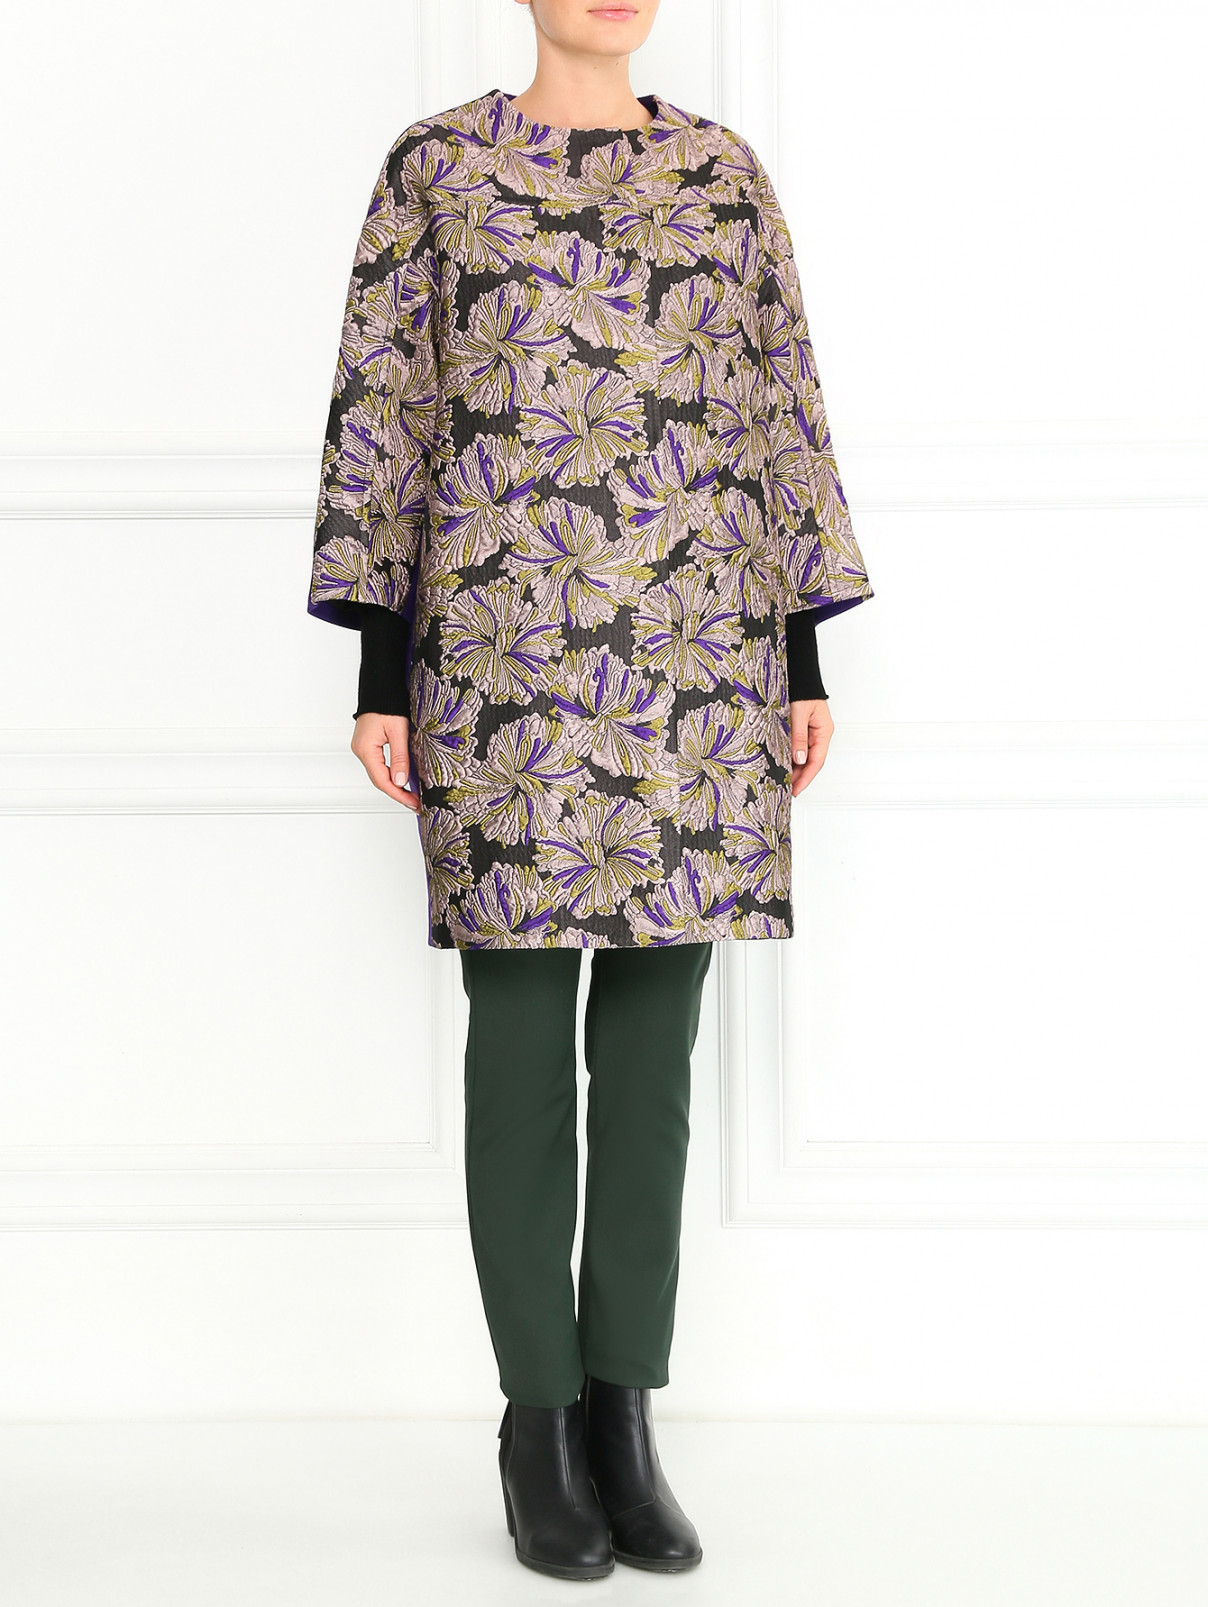 Пальто из хлопка, шерсти и шелка с узором Antonio Marras  –  Модель Общий вид  – Цвет:  Узор